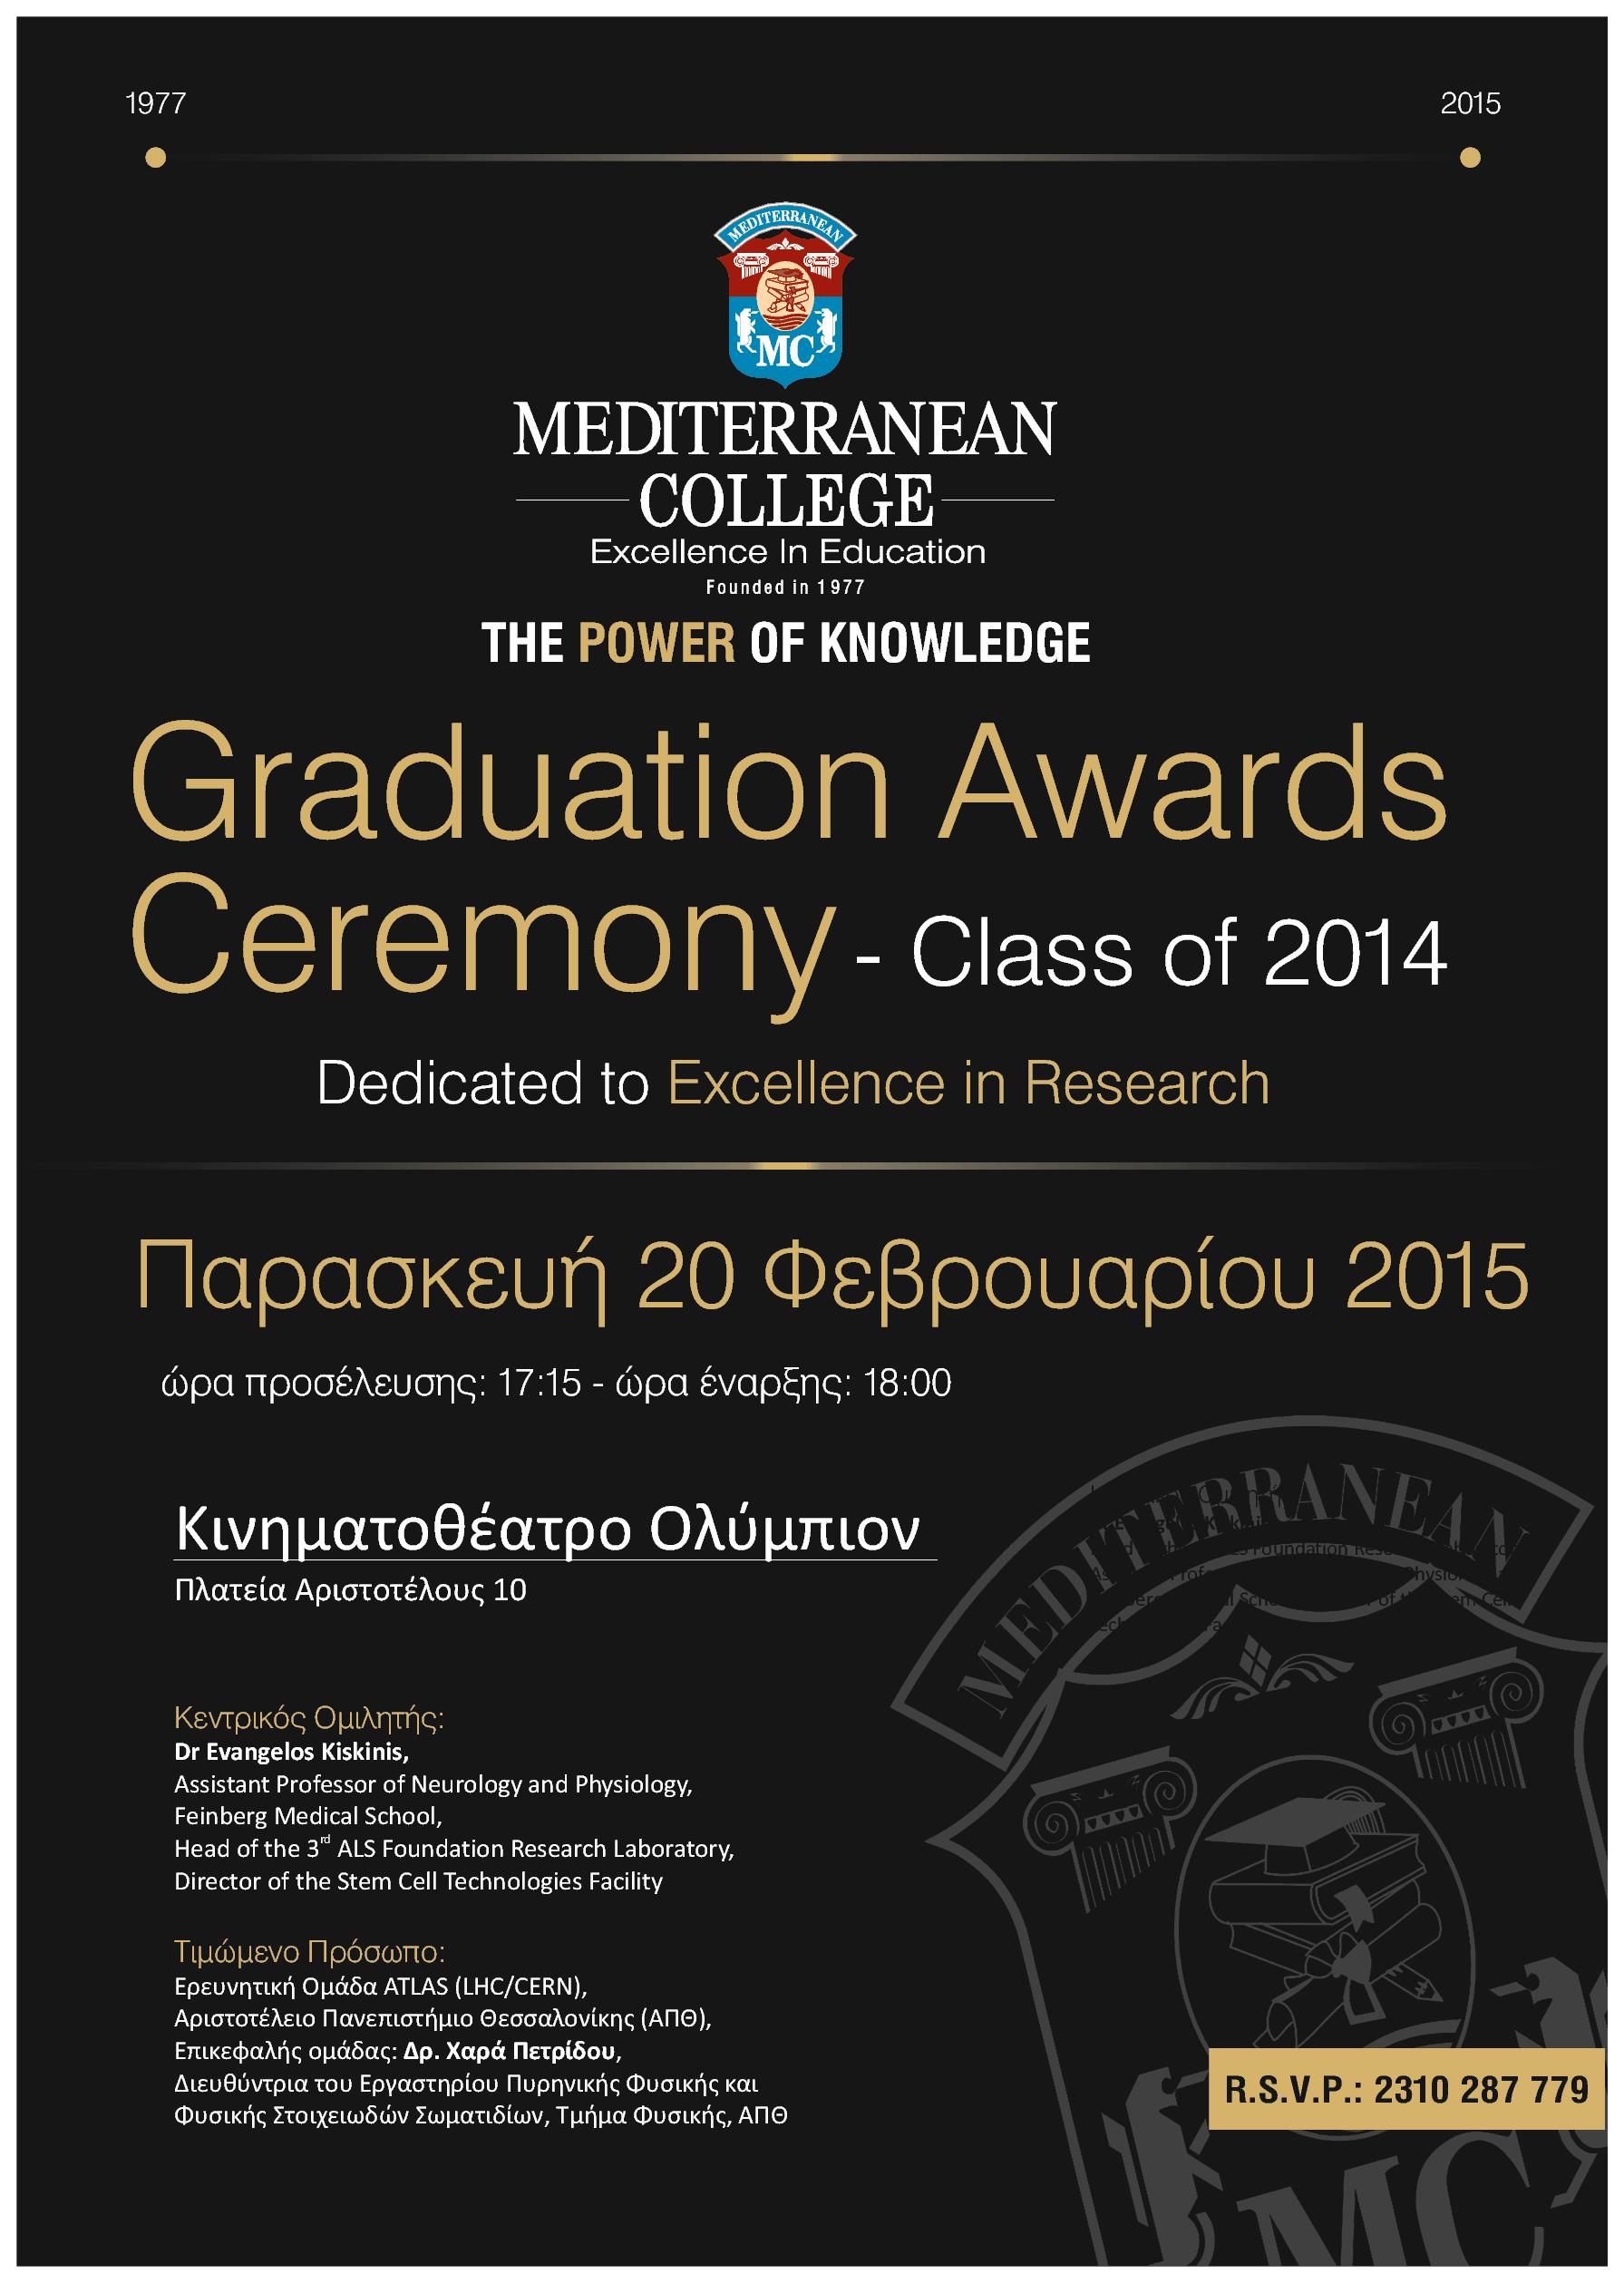 35η Τελετή Αποφοίτησης του Mediterranean College